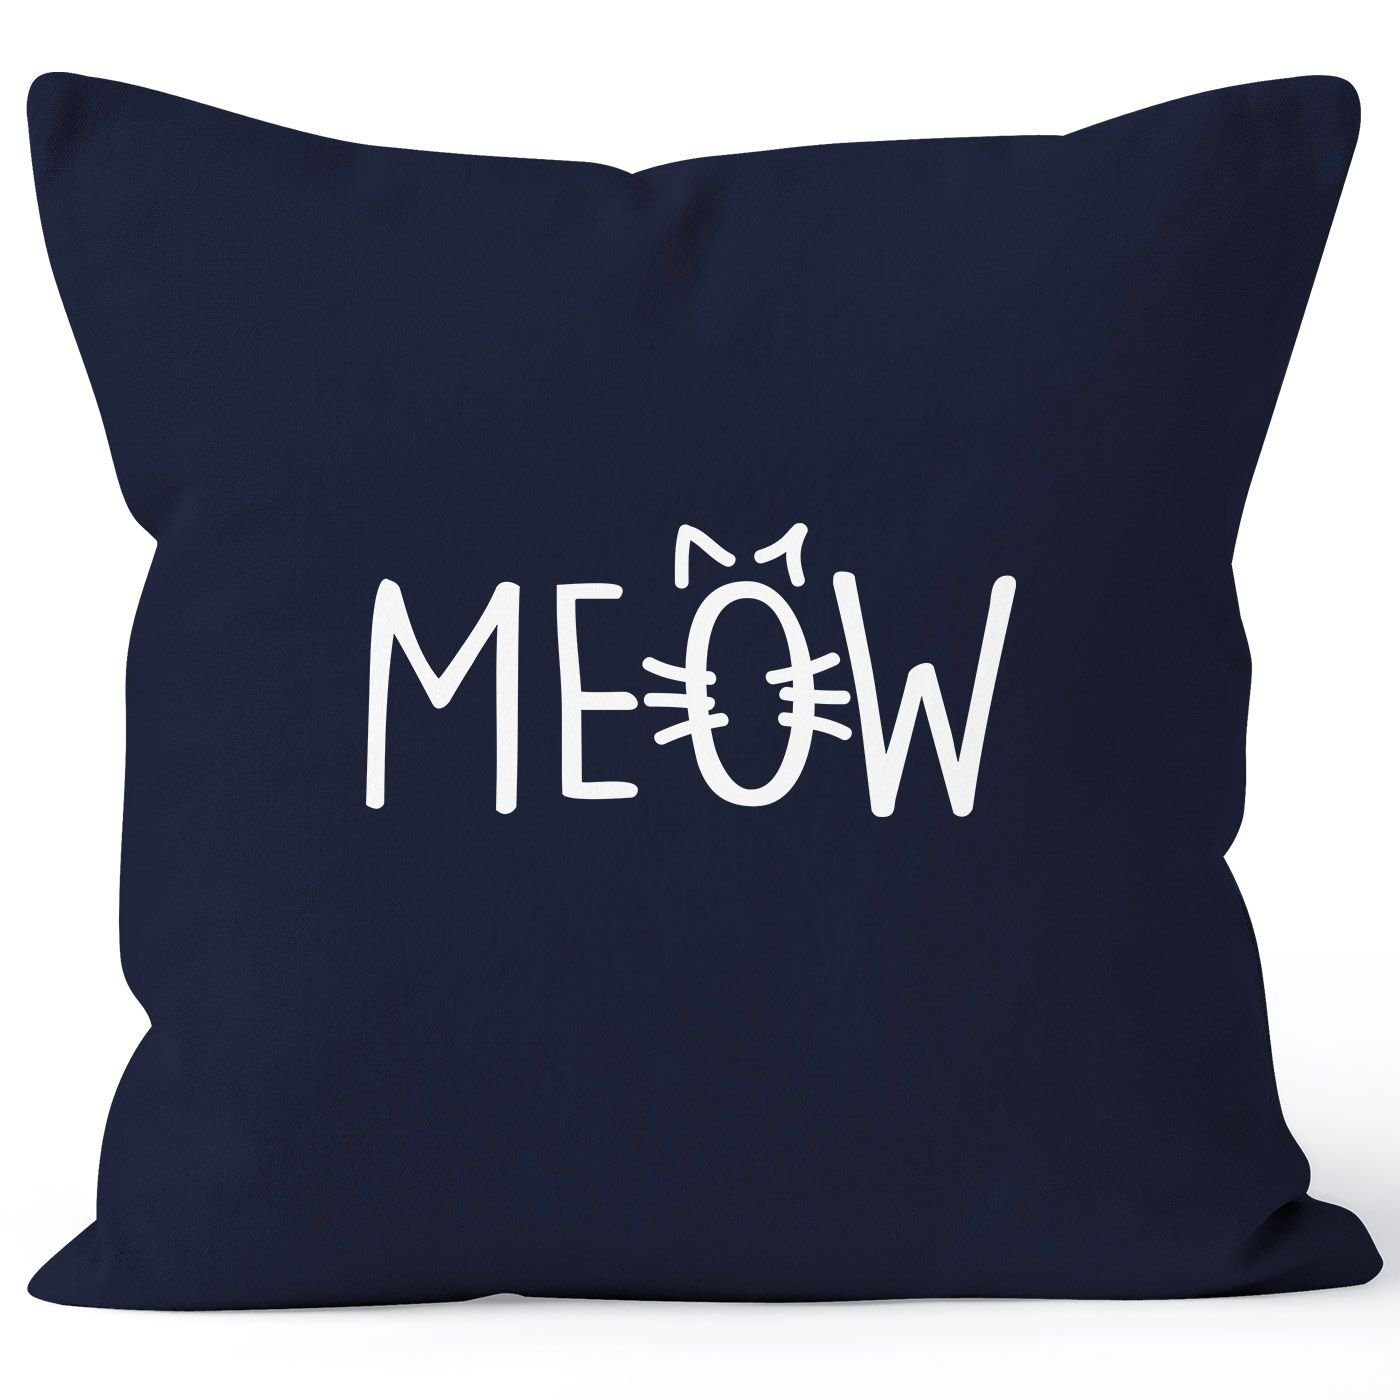 MoonWorks Dekokissen Kissenbezug Kissen-Hülle Katze Miau Baumwolle Deko-Kissen Cat MoonWorks® 40x40 navy Meow